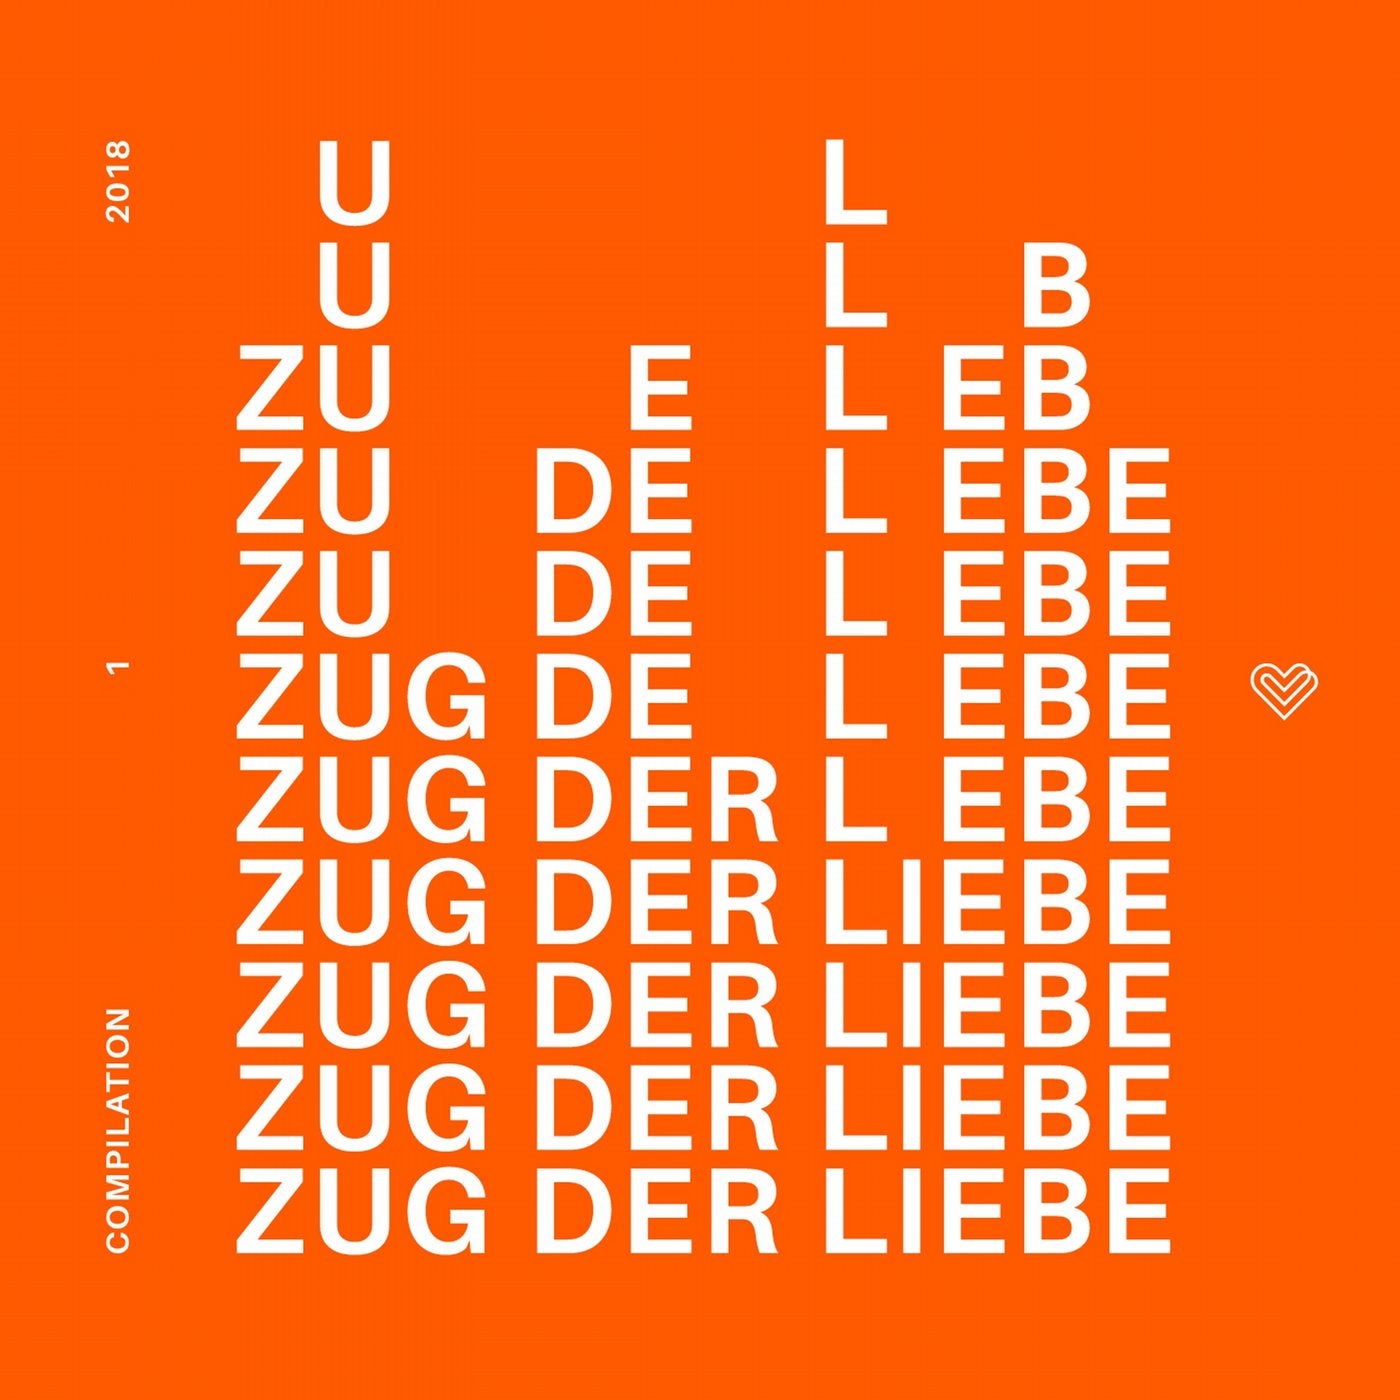 Zug der Liebe Compilation 1